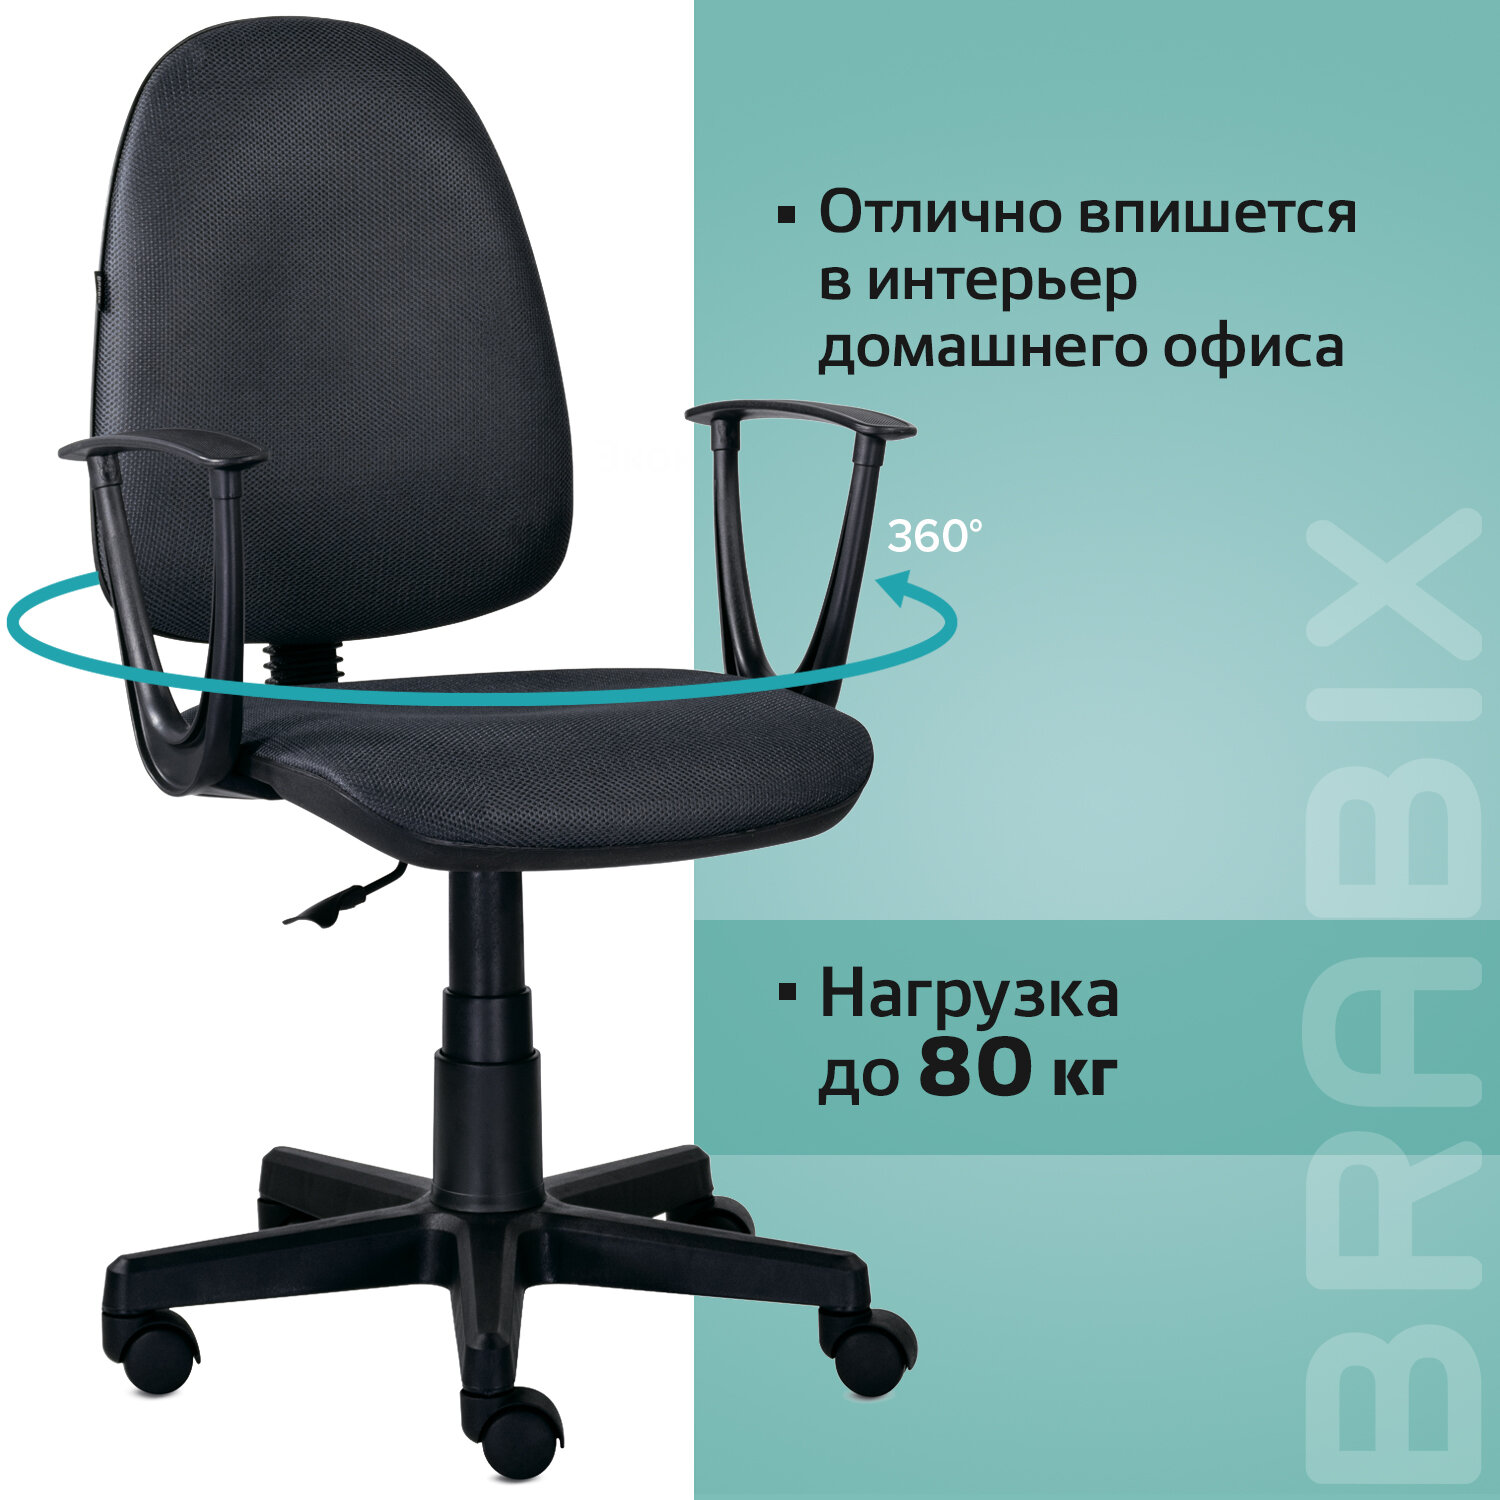 Кресло BRABIX Prestige Start MG-312, эргономичная спинка, ткань